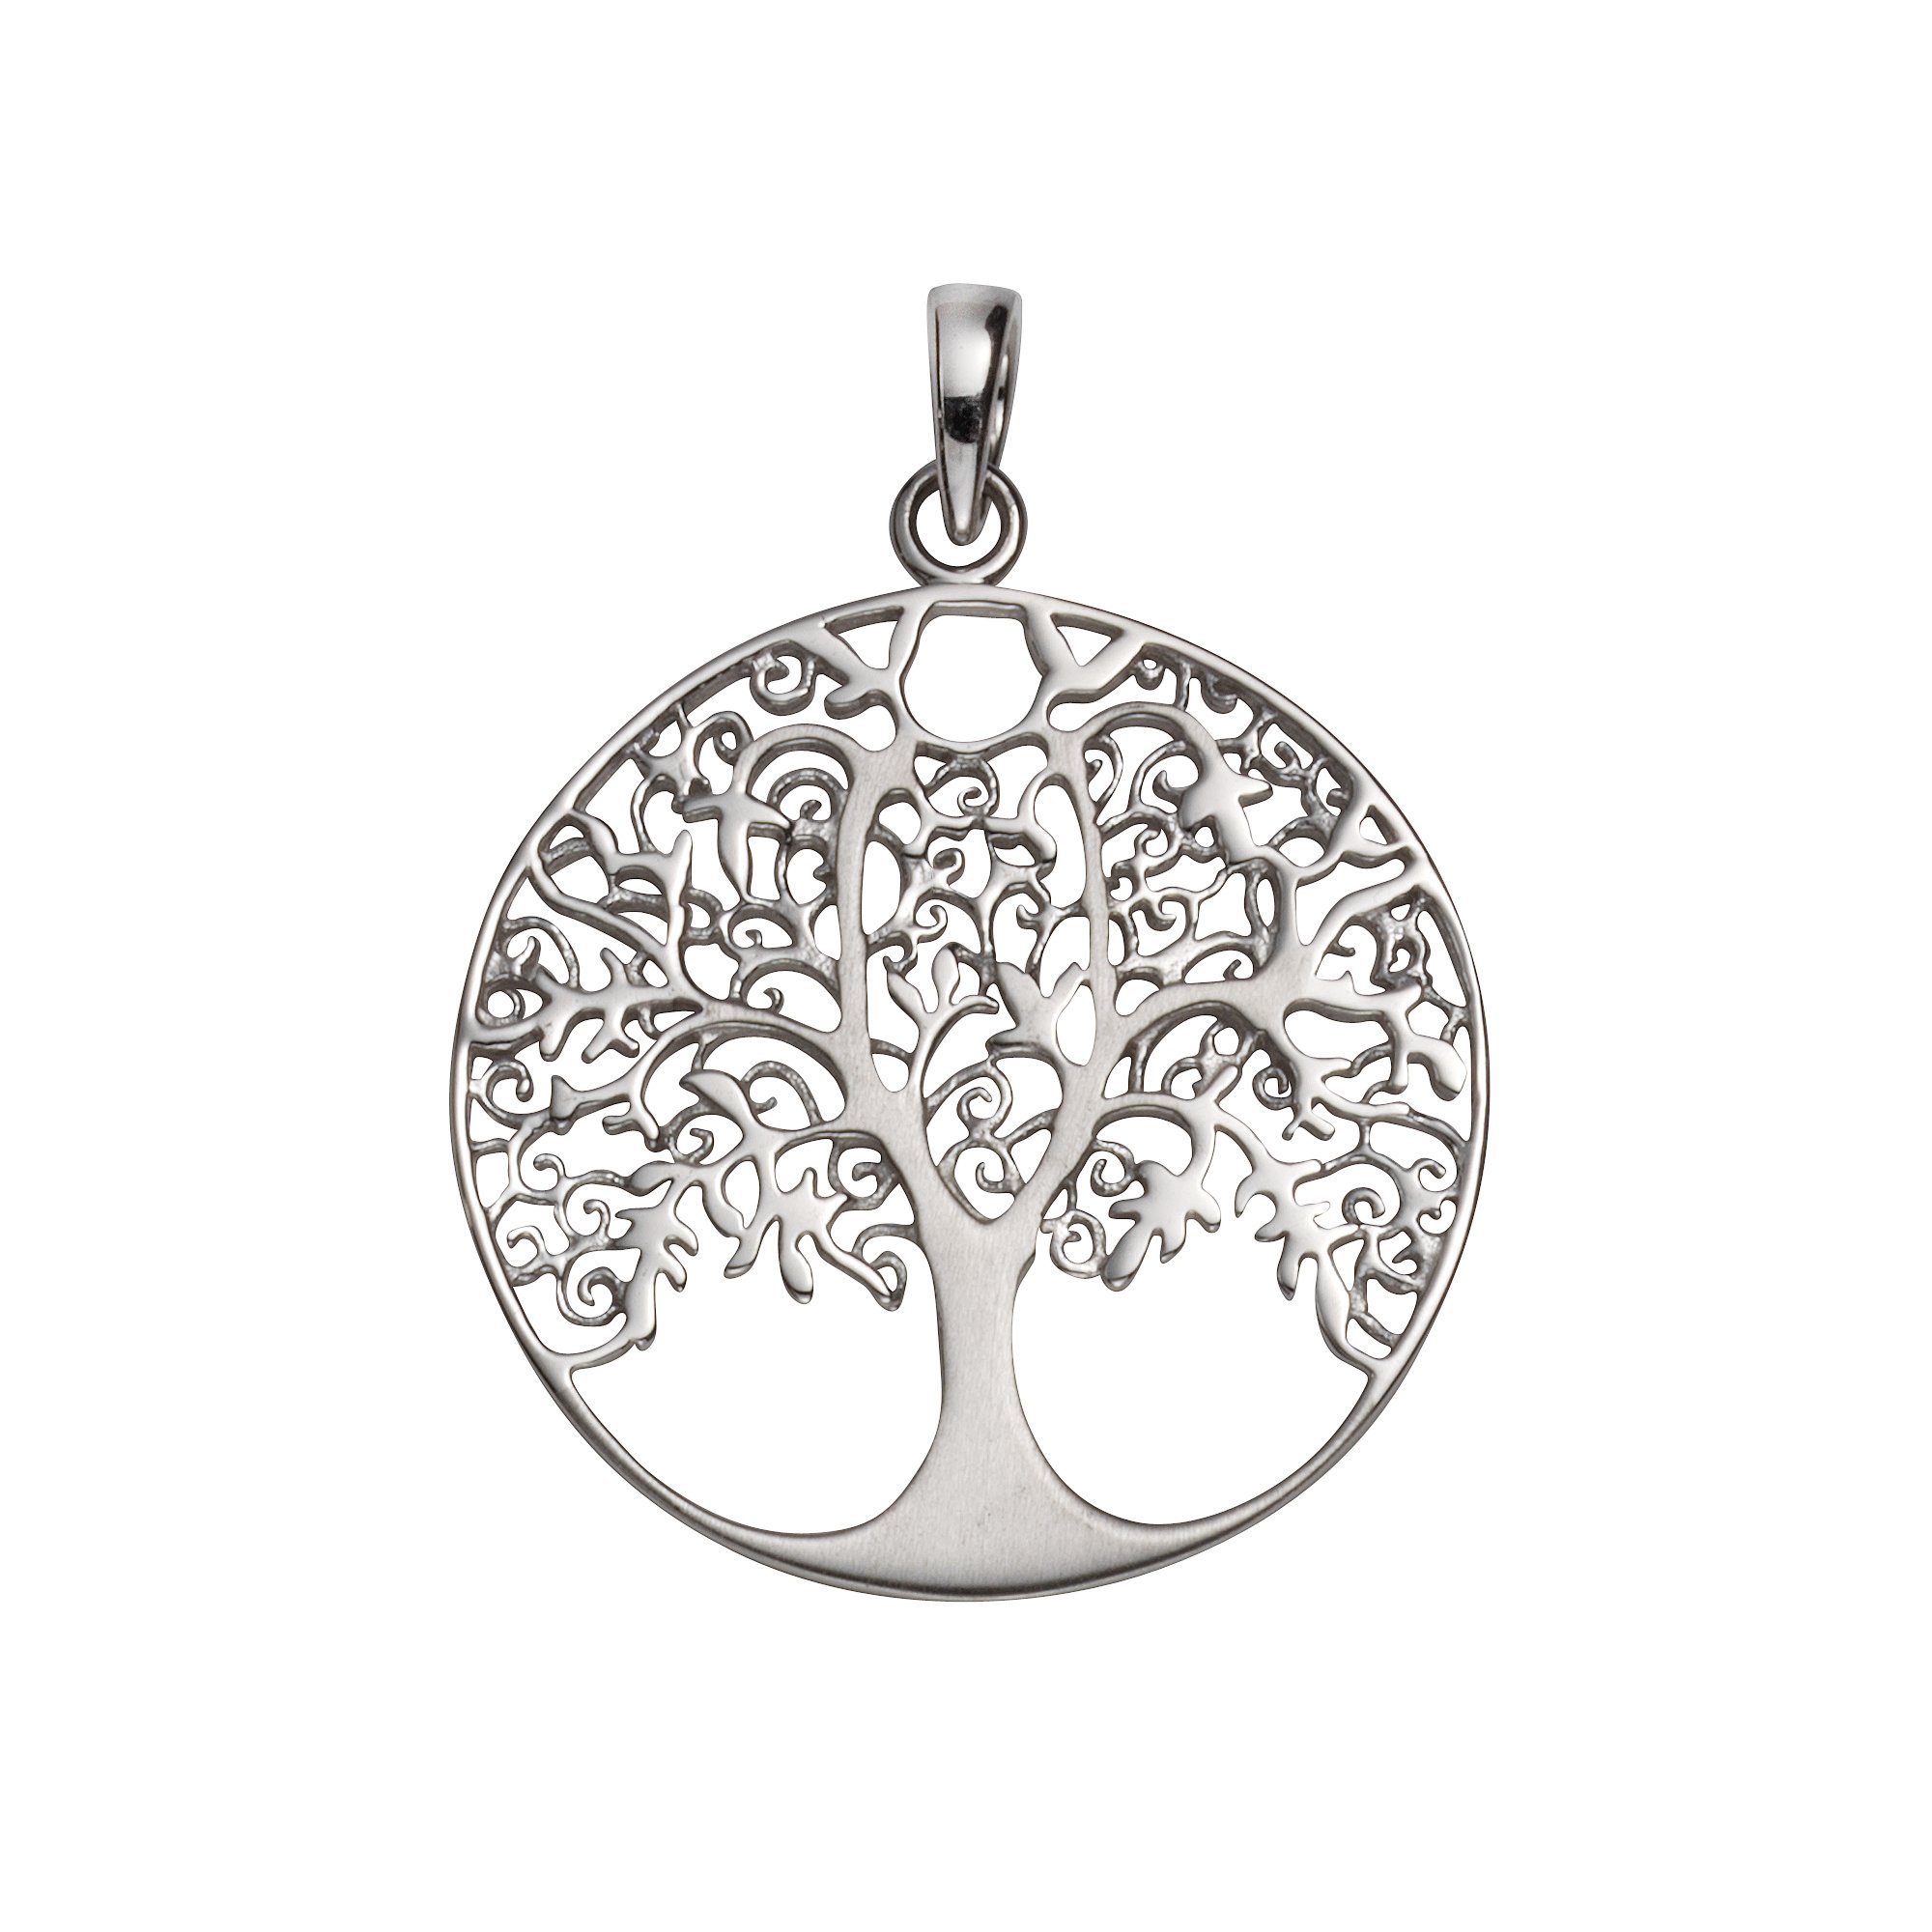 Vivance Das ideale Anlässe Geschenk Sterling 925 rhodiniert Silber für Lebensbaum, besondere Kettenanhänger